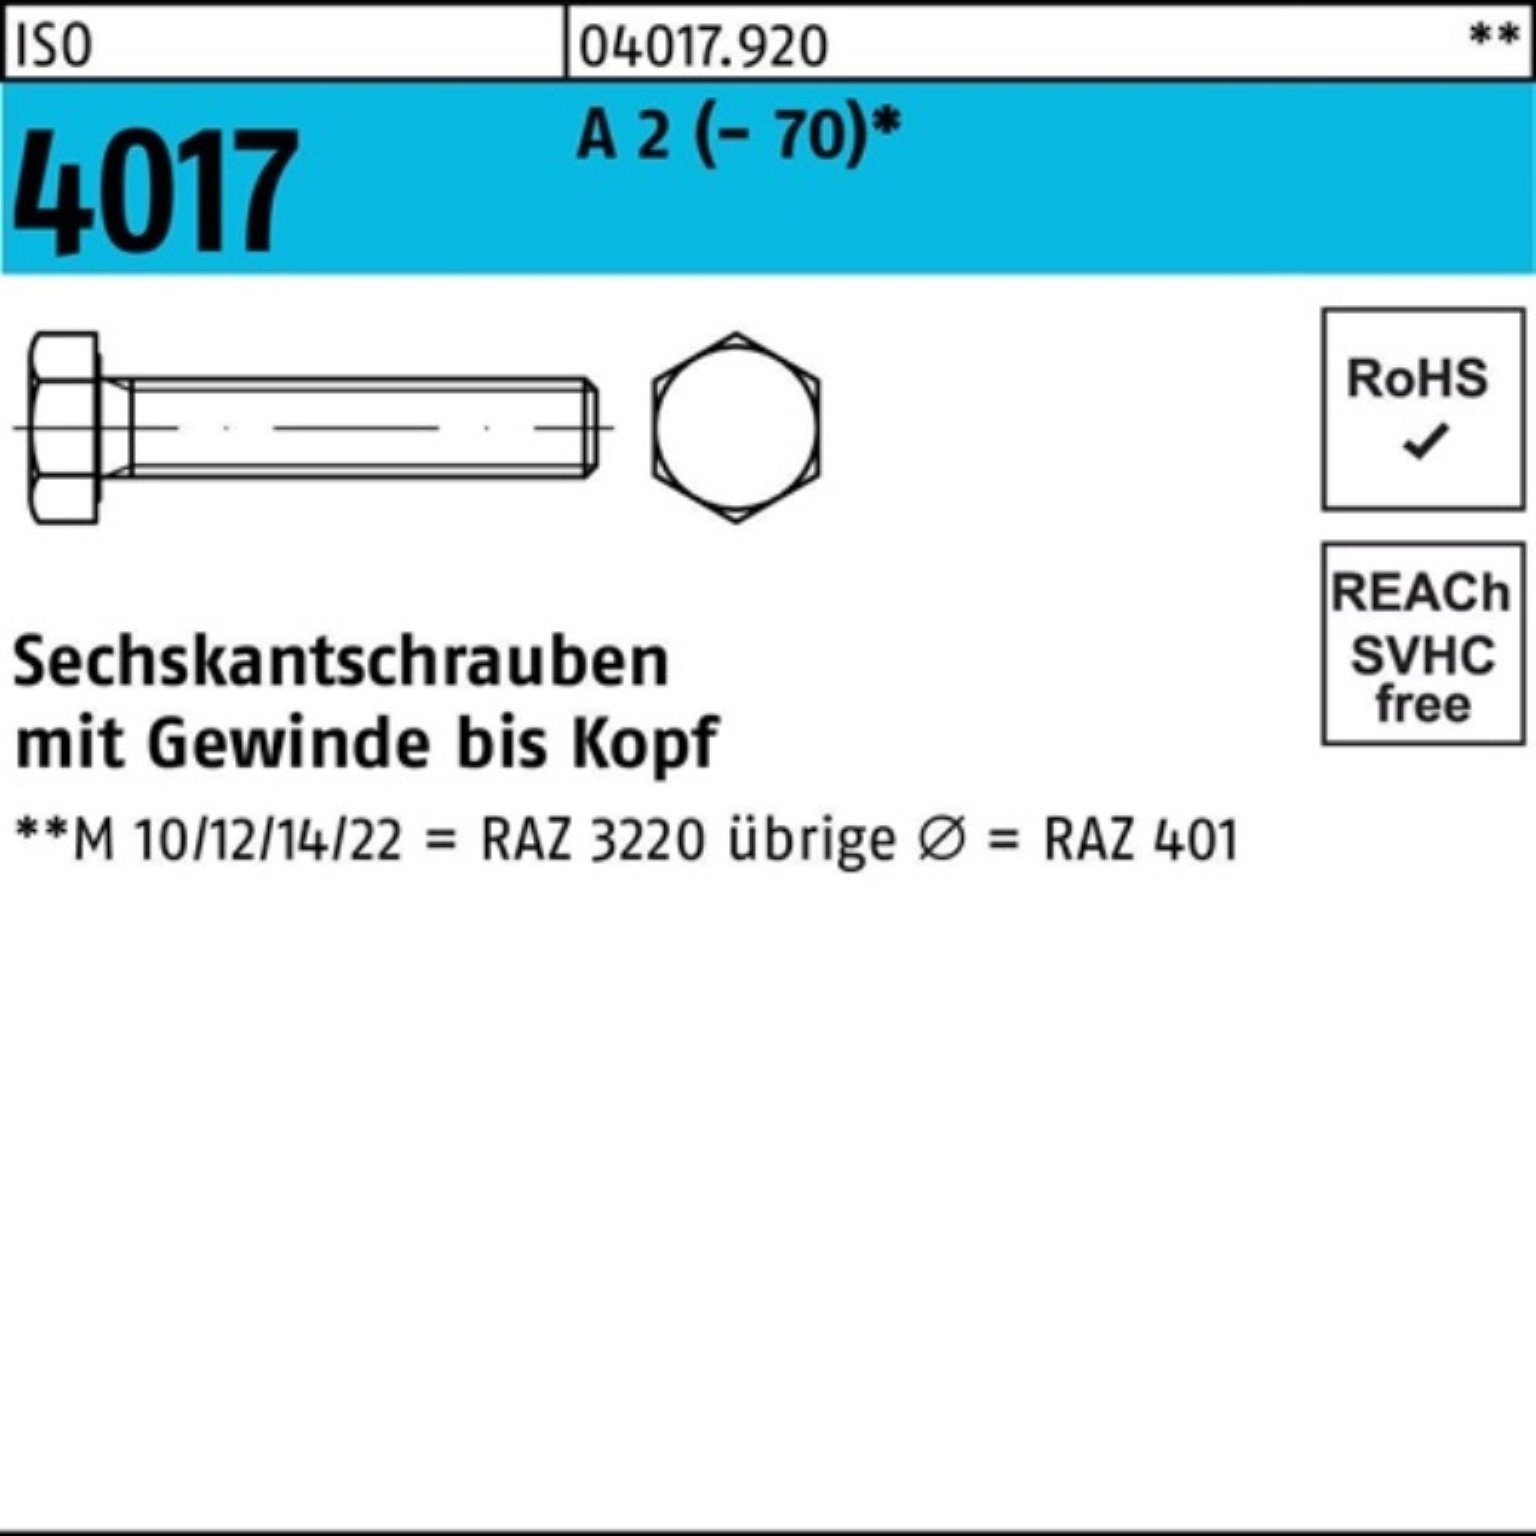 Stück Sechskantschraube 4017 A Bufab 30 200 VG ISO Sechskantschraube 200er 2 Pack (70) M5x